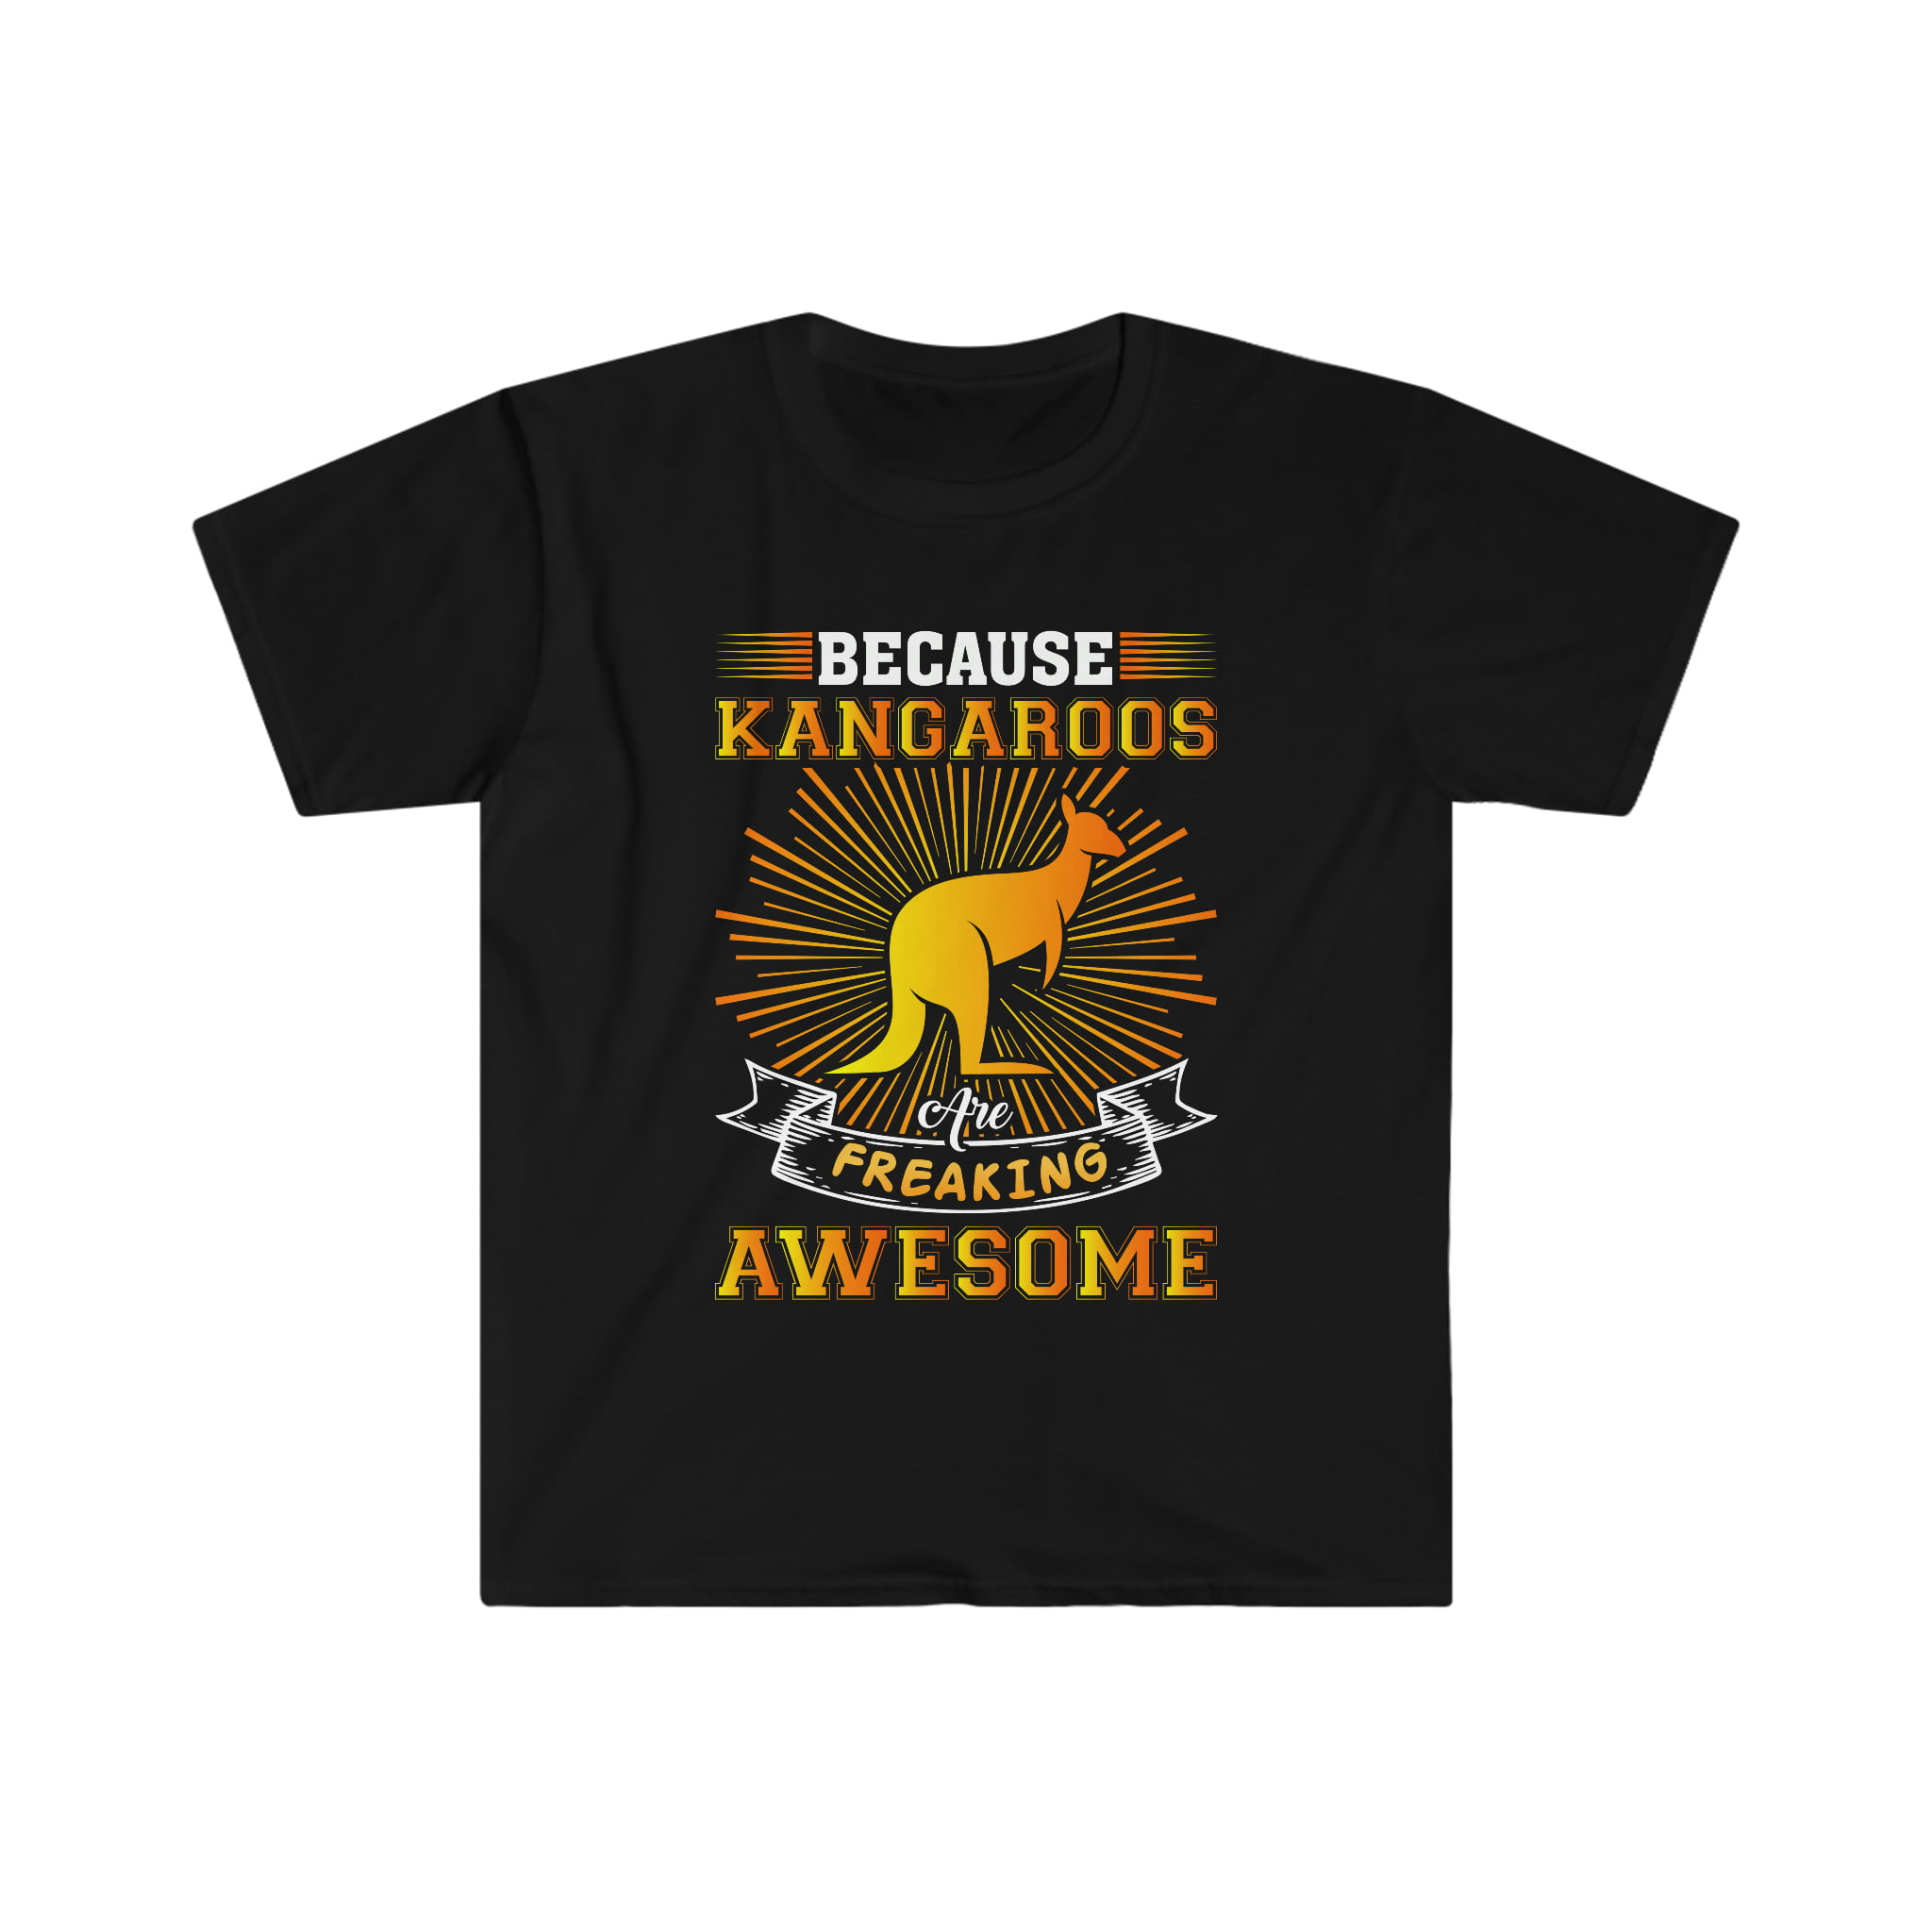 Kangaroo t-shirt Unisex - Are TShirt Gift Awesome Kangaroos Freaking